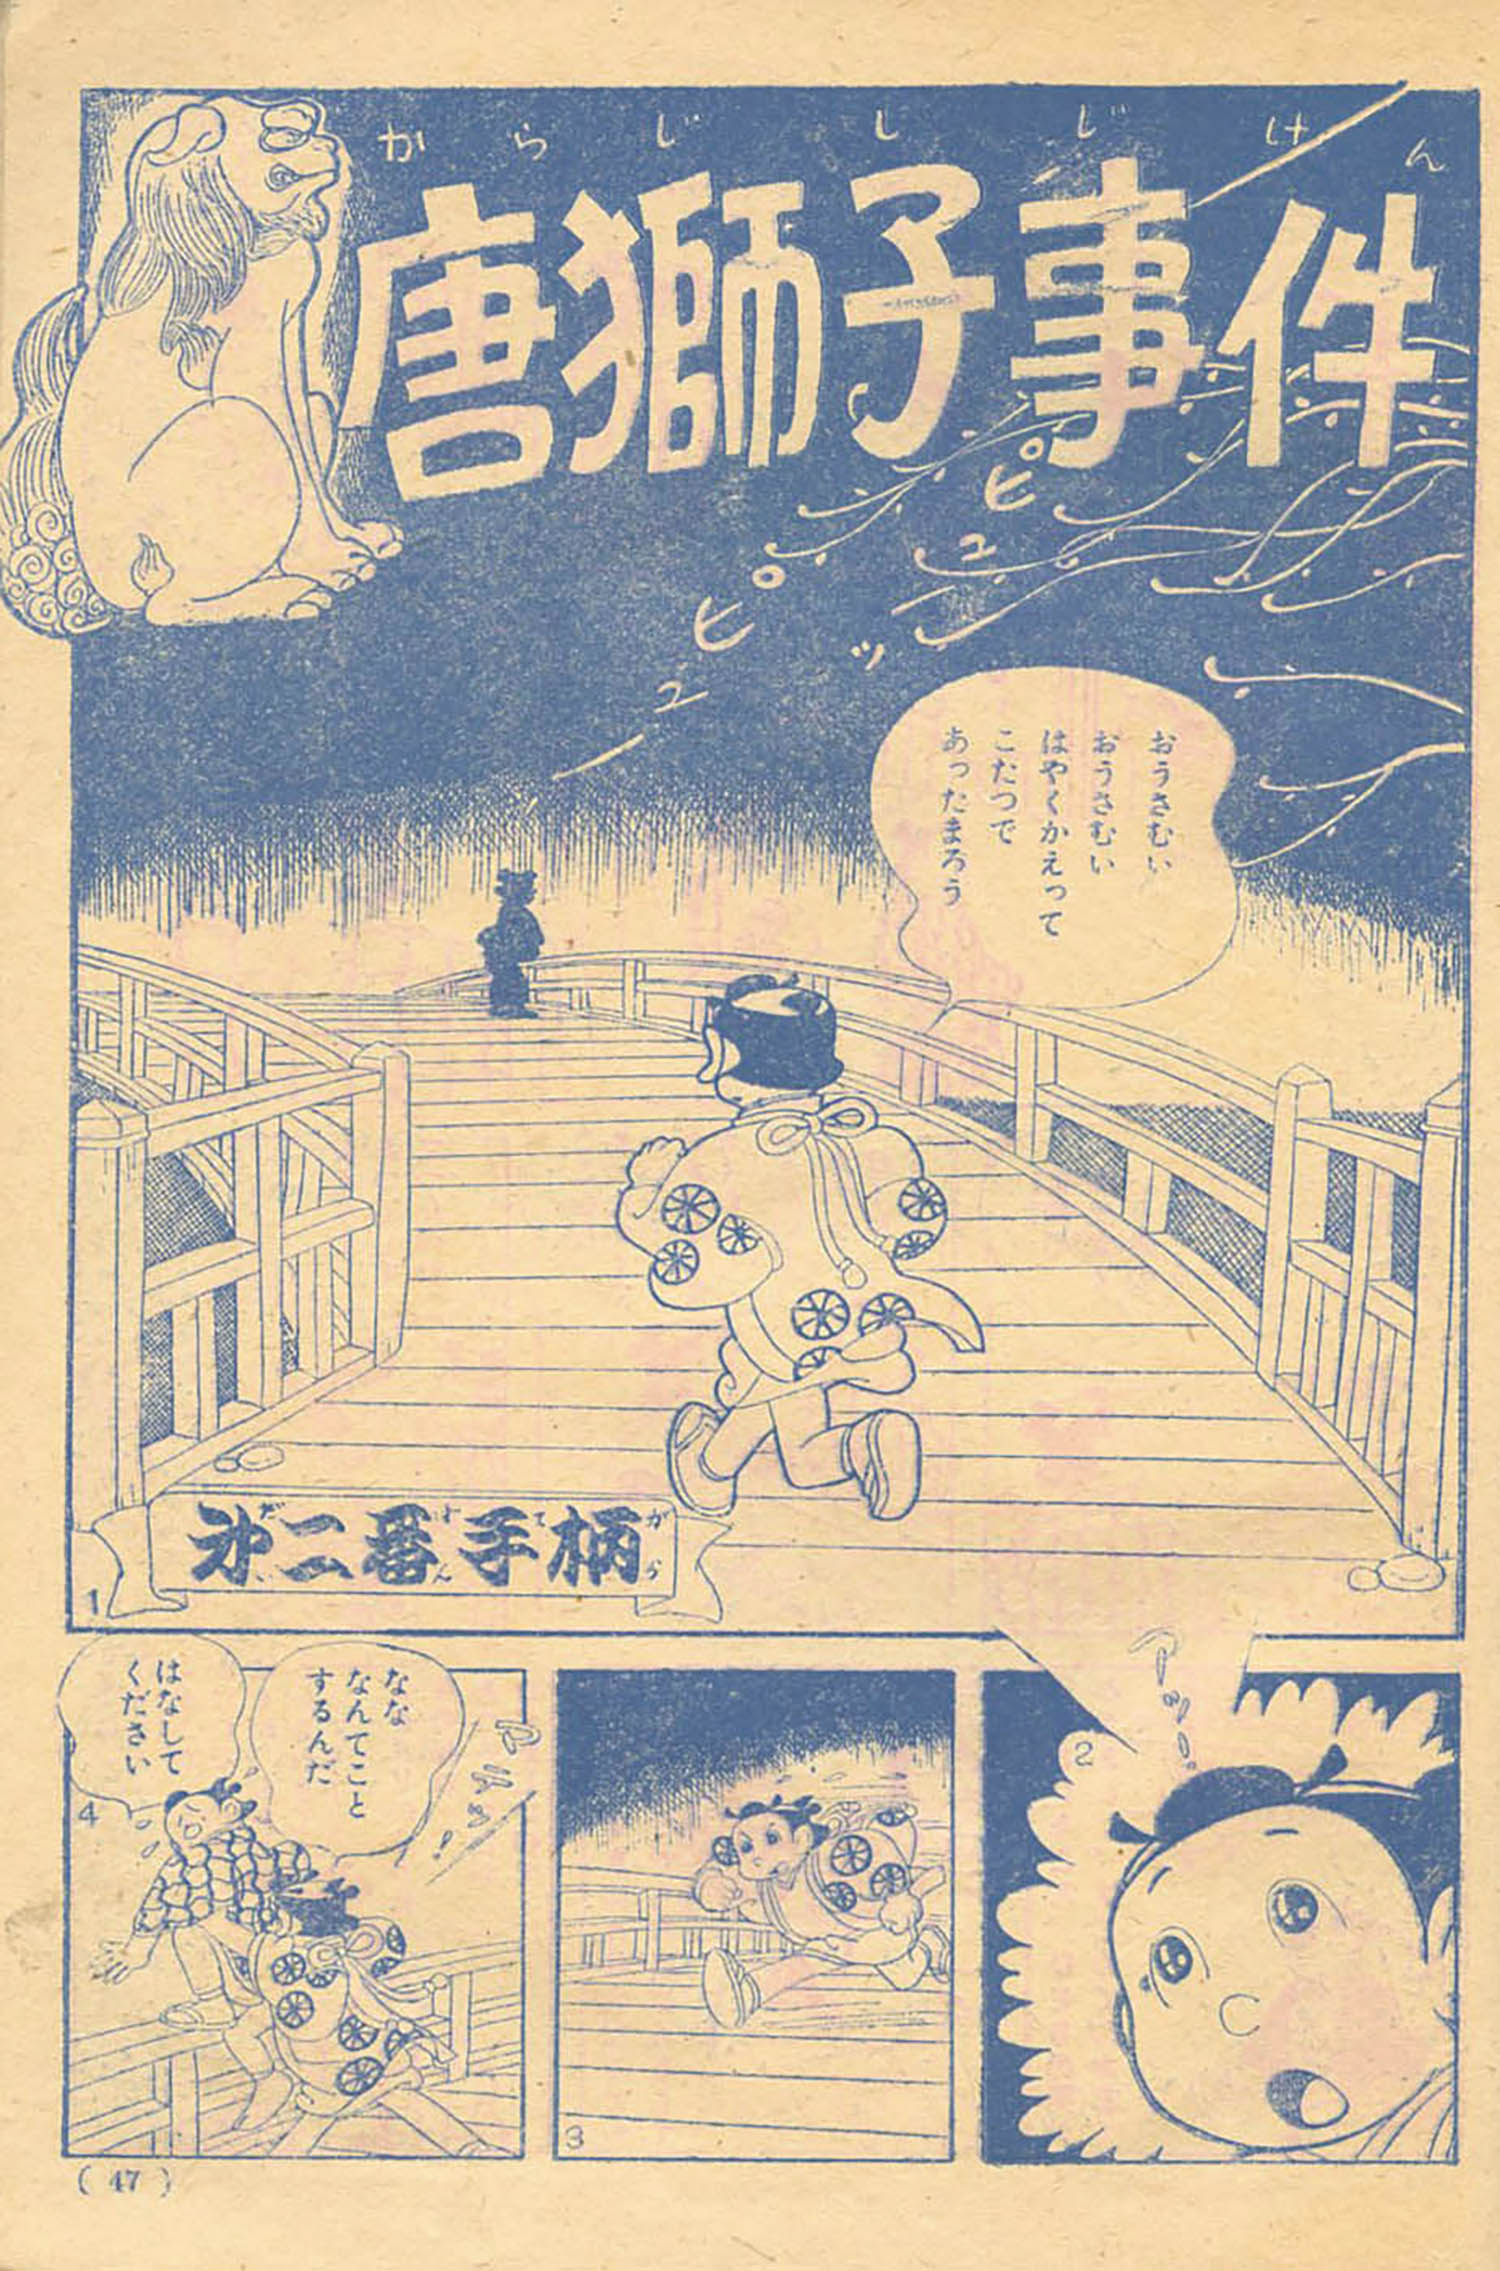 うしおそうじ「朱房の小天狗」1957(S32)01ふろく